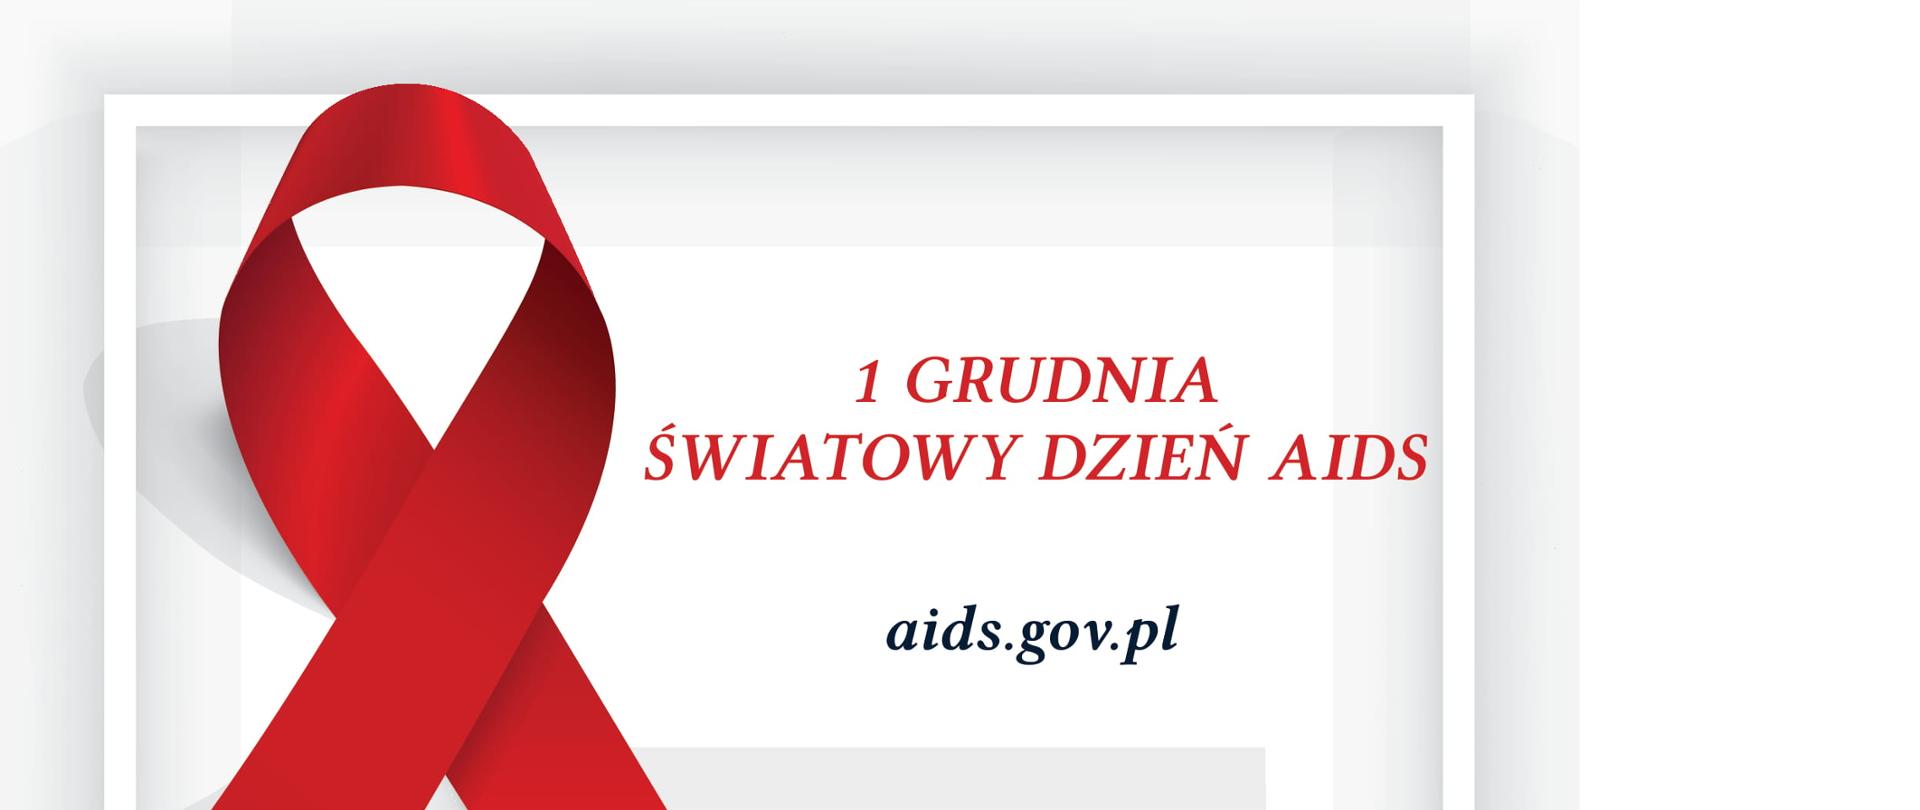 Na jasnym tle czerwona wstążka, po prawej stronie napis czerwonym drukiem: 1GRUDNIA ŚWIATOWY DZIEŃ AIDS, poniżej link do strony aids.gov.pl